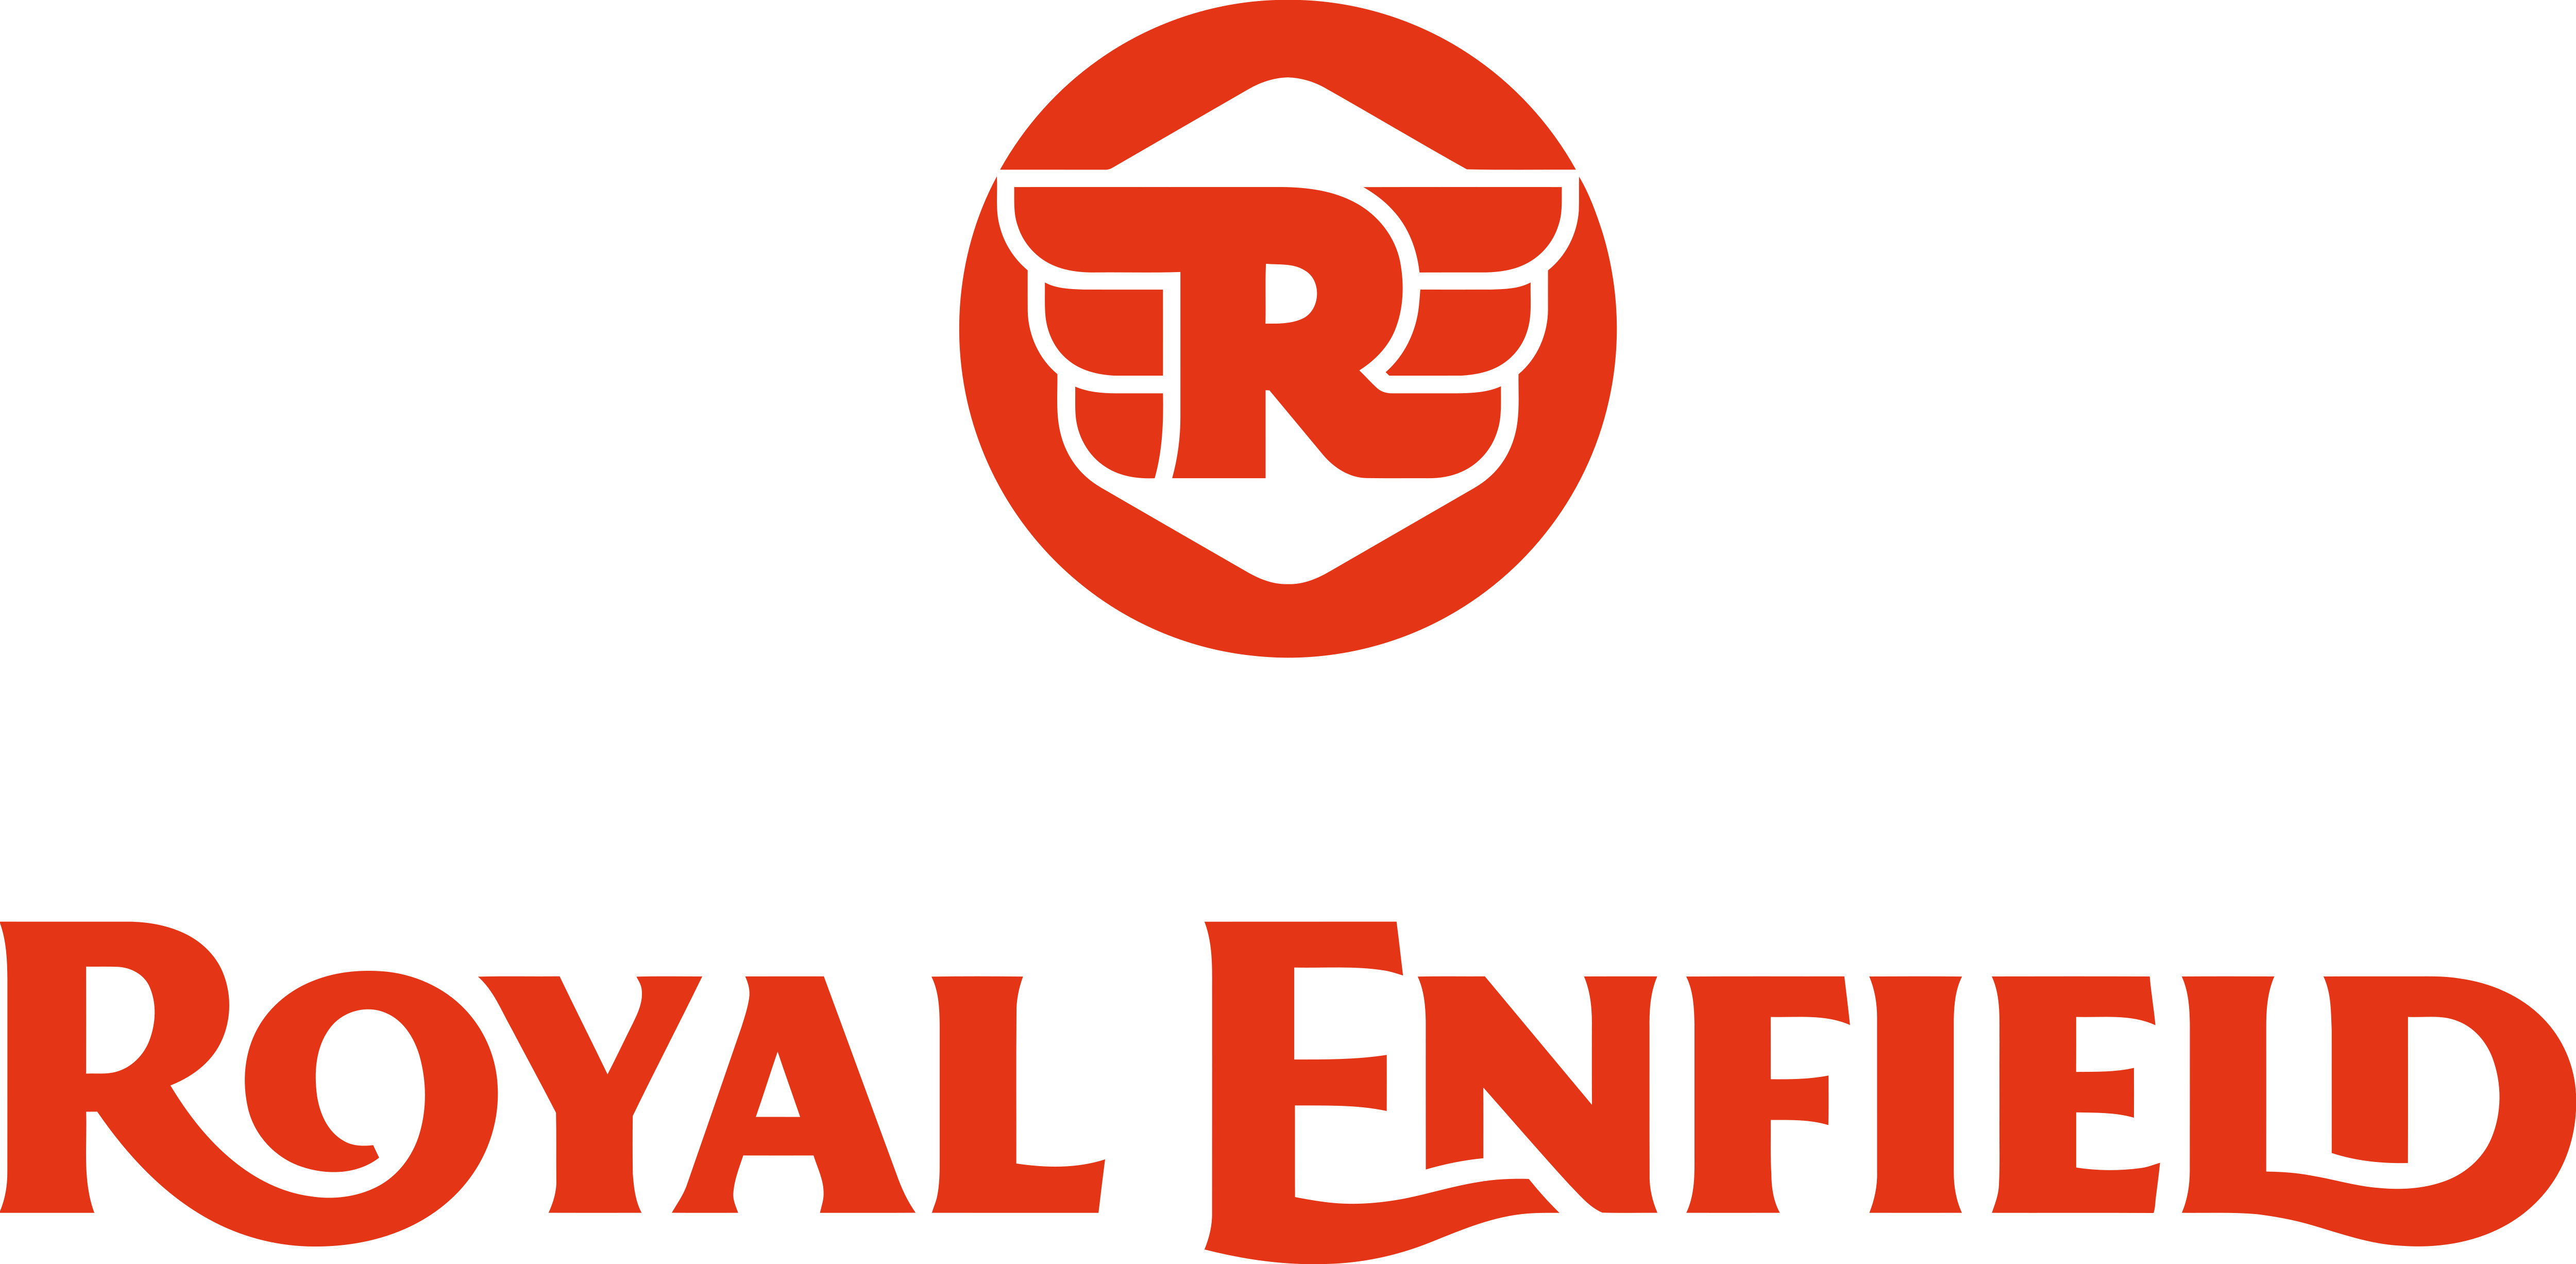 Royal Enfield PNG Photo Image